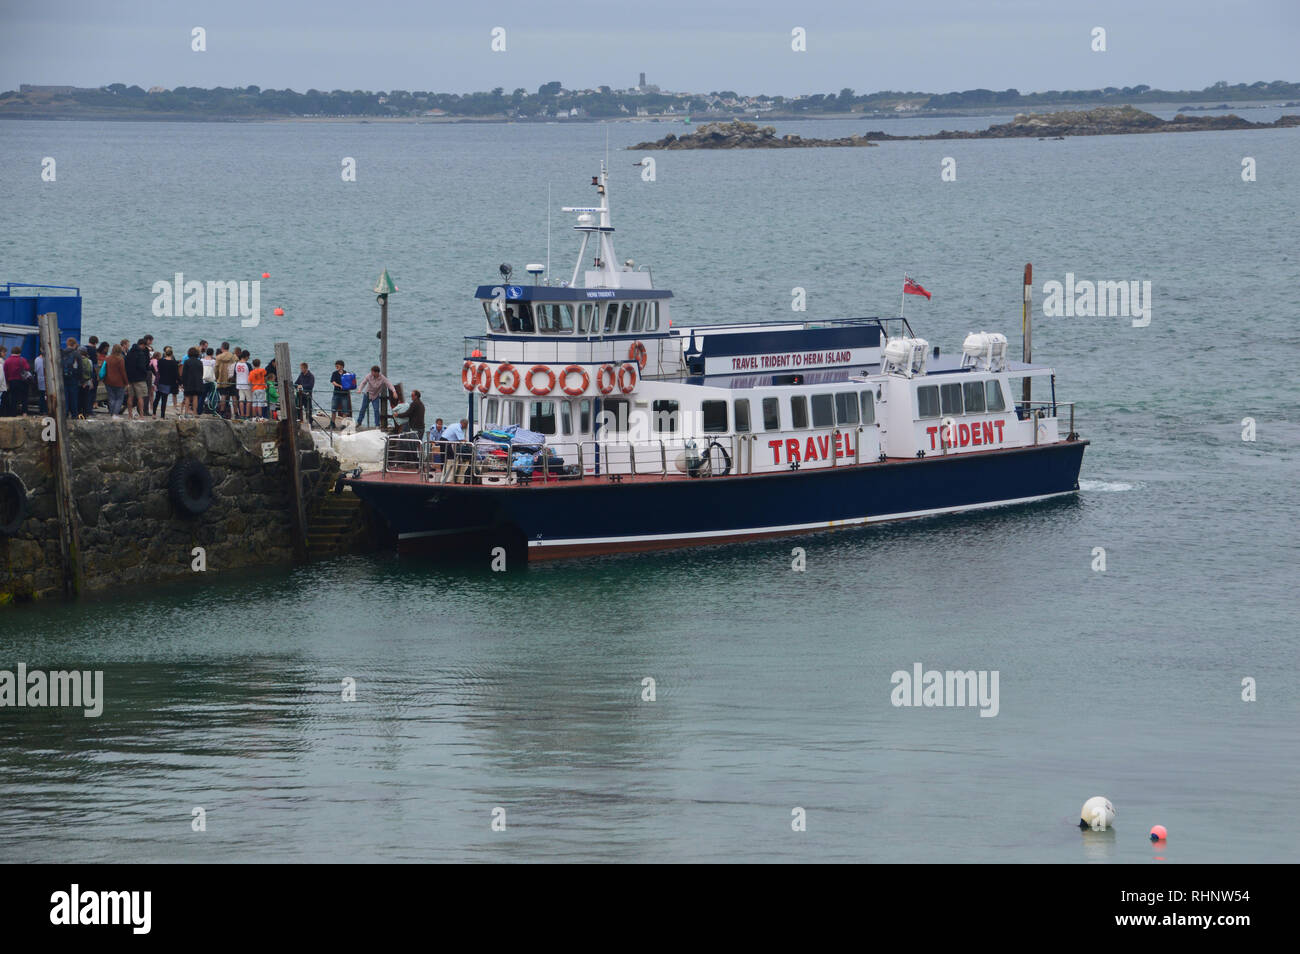 Les passagers de descendre le billet de ferry à l'île de Herm Trident de St Peter Port Guernsey, Channel Islands.UK. Banque D'Images